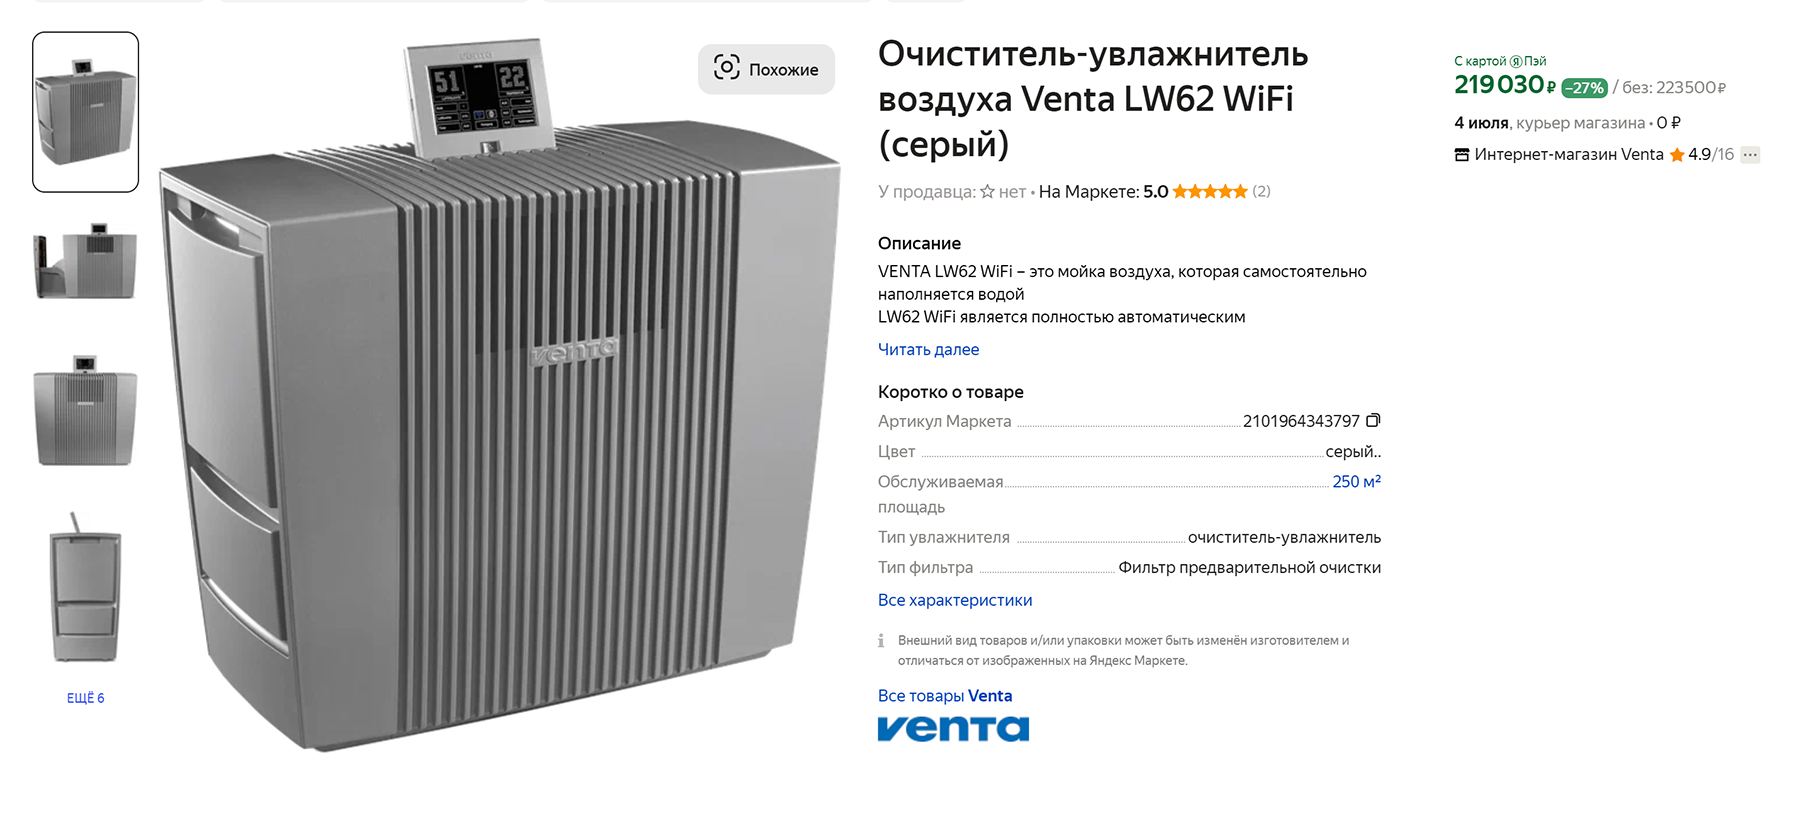 Отдельные модели стоят еще дороже. Цена зависит также от площади помещения, в котором будет работать очиститель. Источник: market.yandex.ru